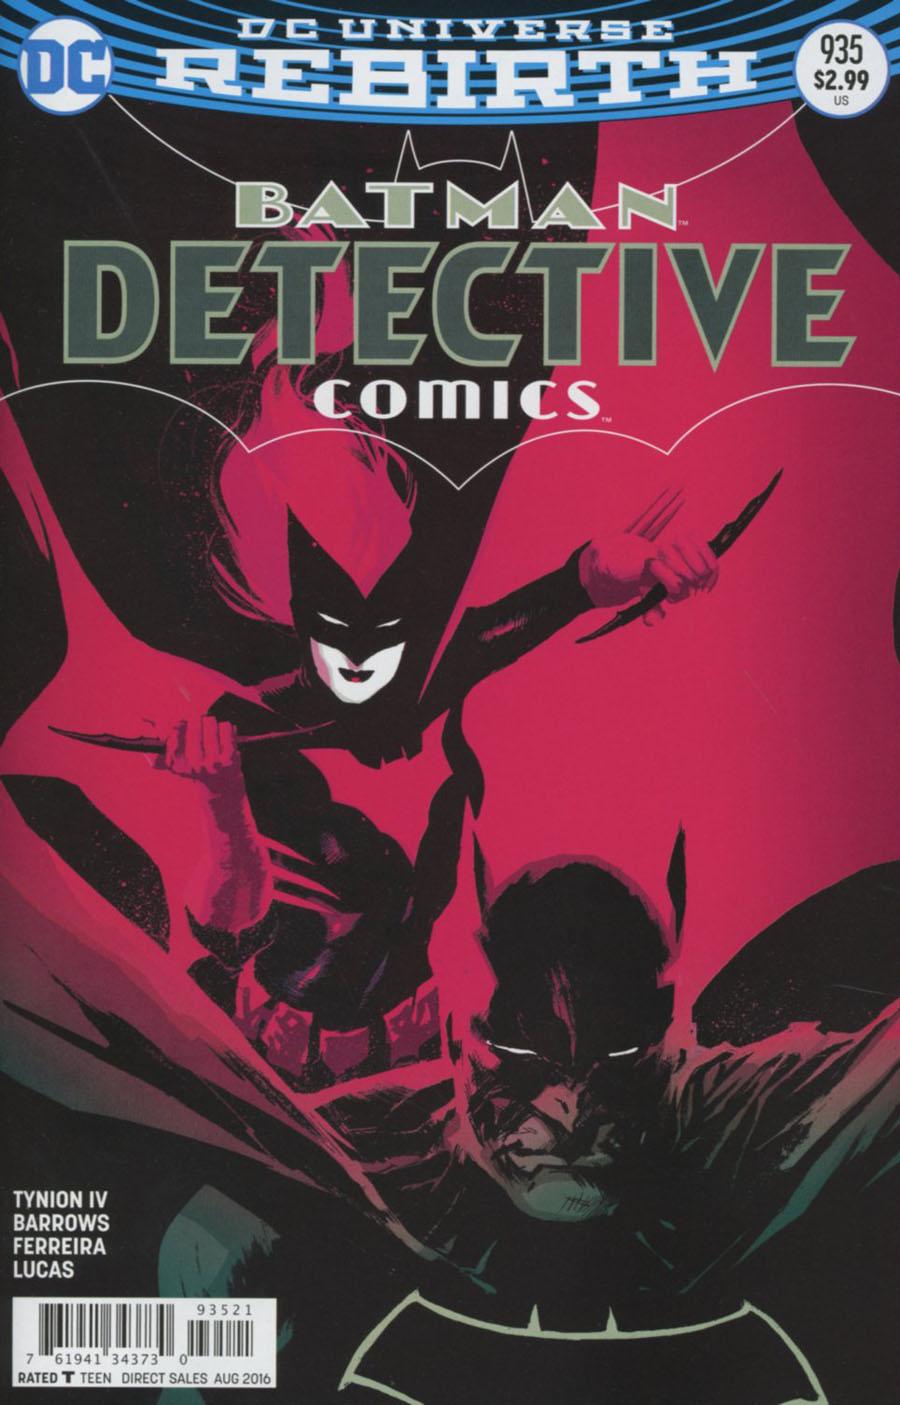 Detective Comics Vol. 2 #935